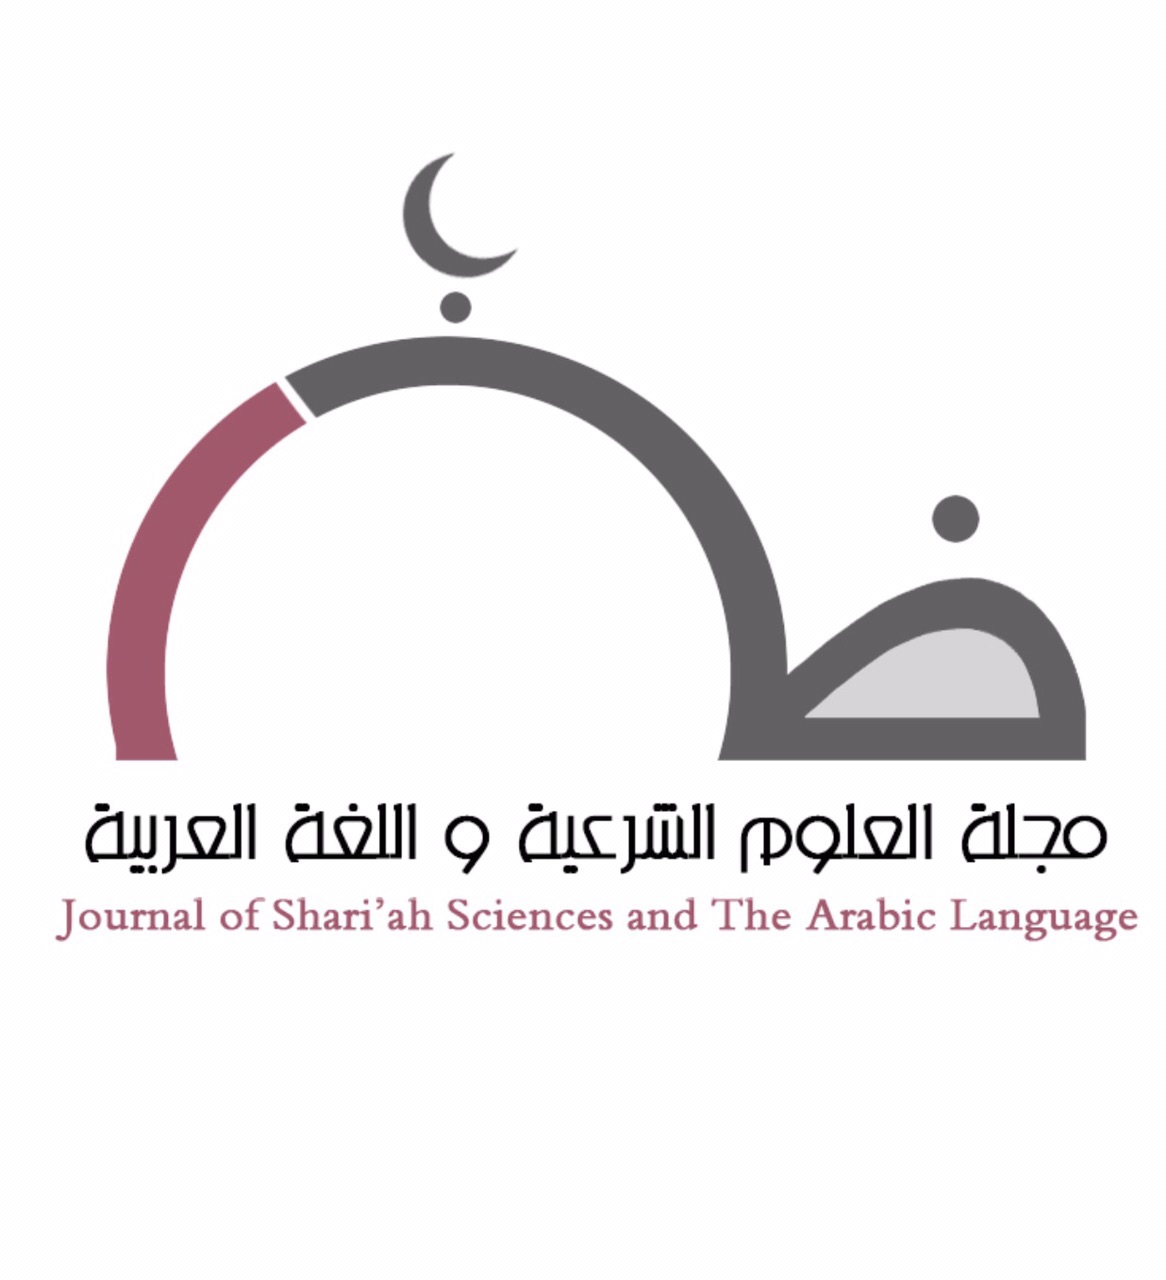 مجلة العلوم الشرعية واللغة العربية.jpg